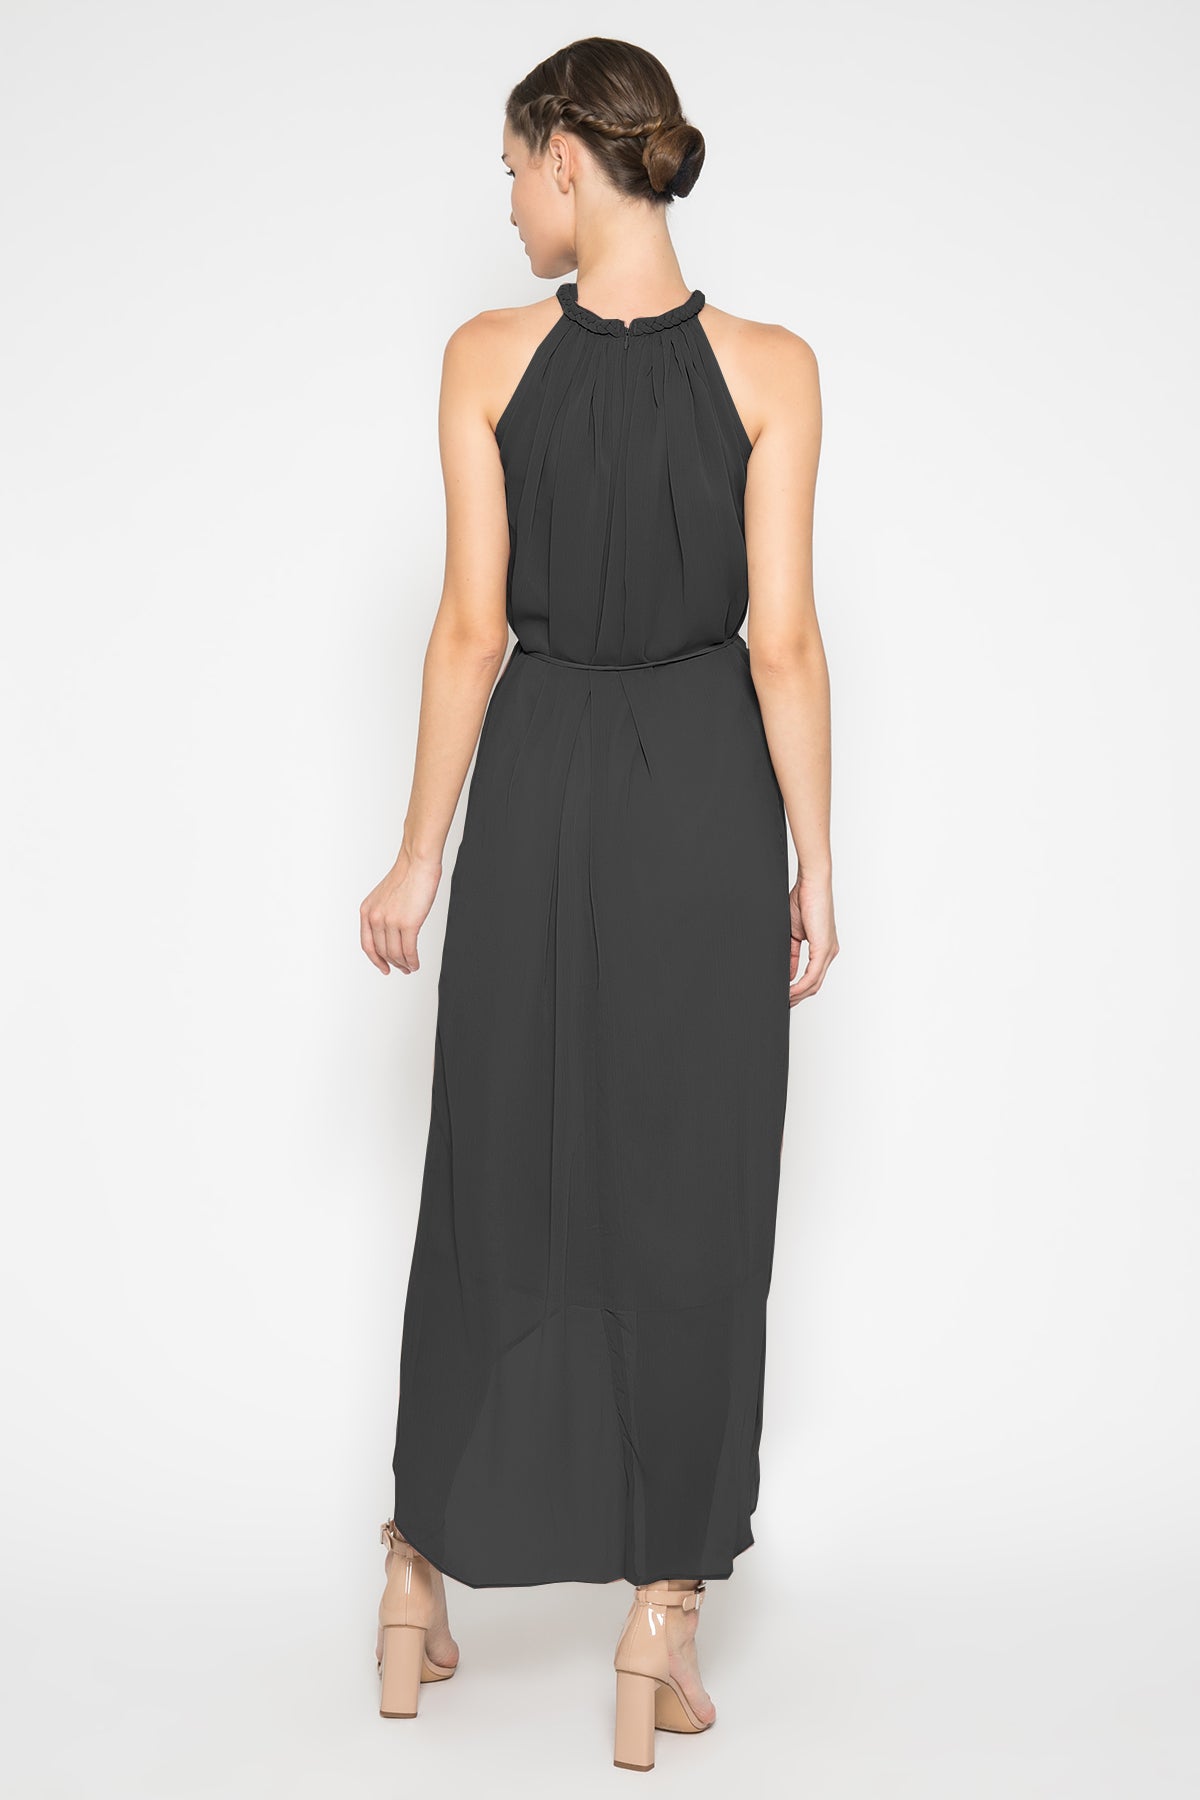 Sabine Black Dress